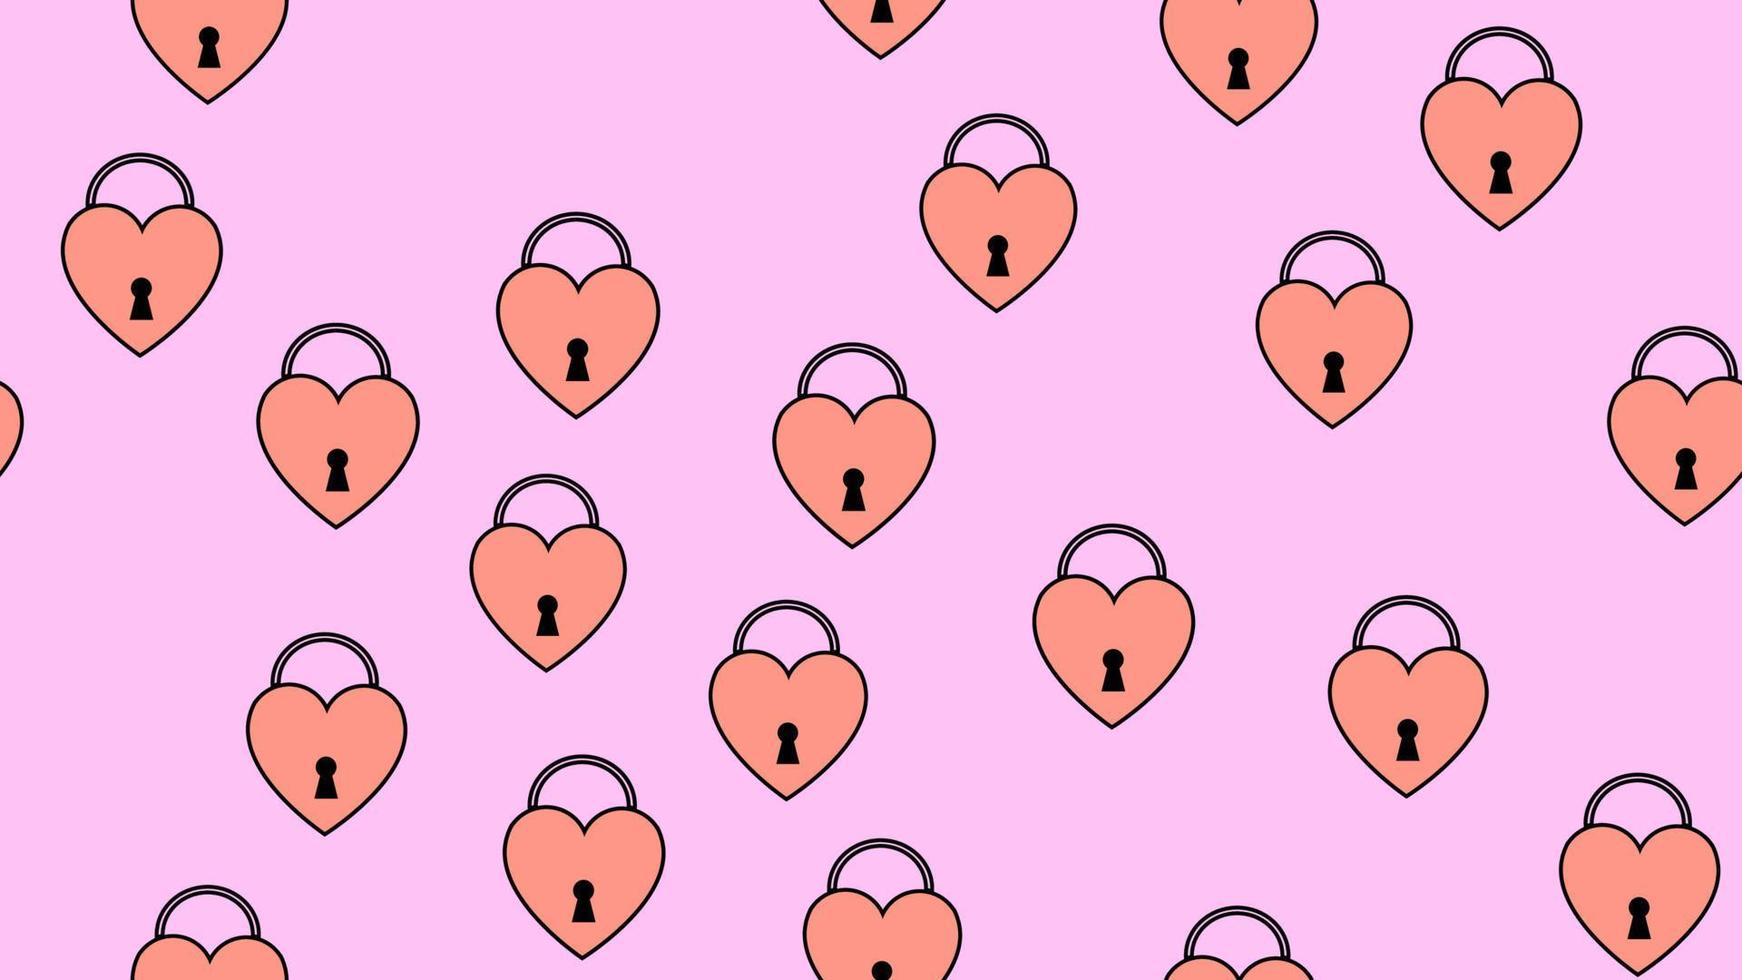 patrón de textura sin fisuras de cerraduras planas en forma de corazones, artículos de amor para la fiesta del amor día de san valentín el 14 de febrero o el 8 de marzo sobre un fondo rosa. ilustración vectorial vector